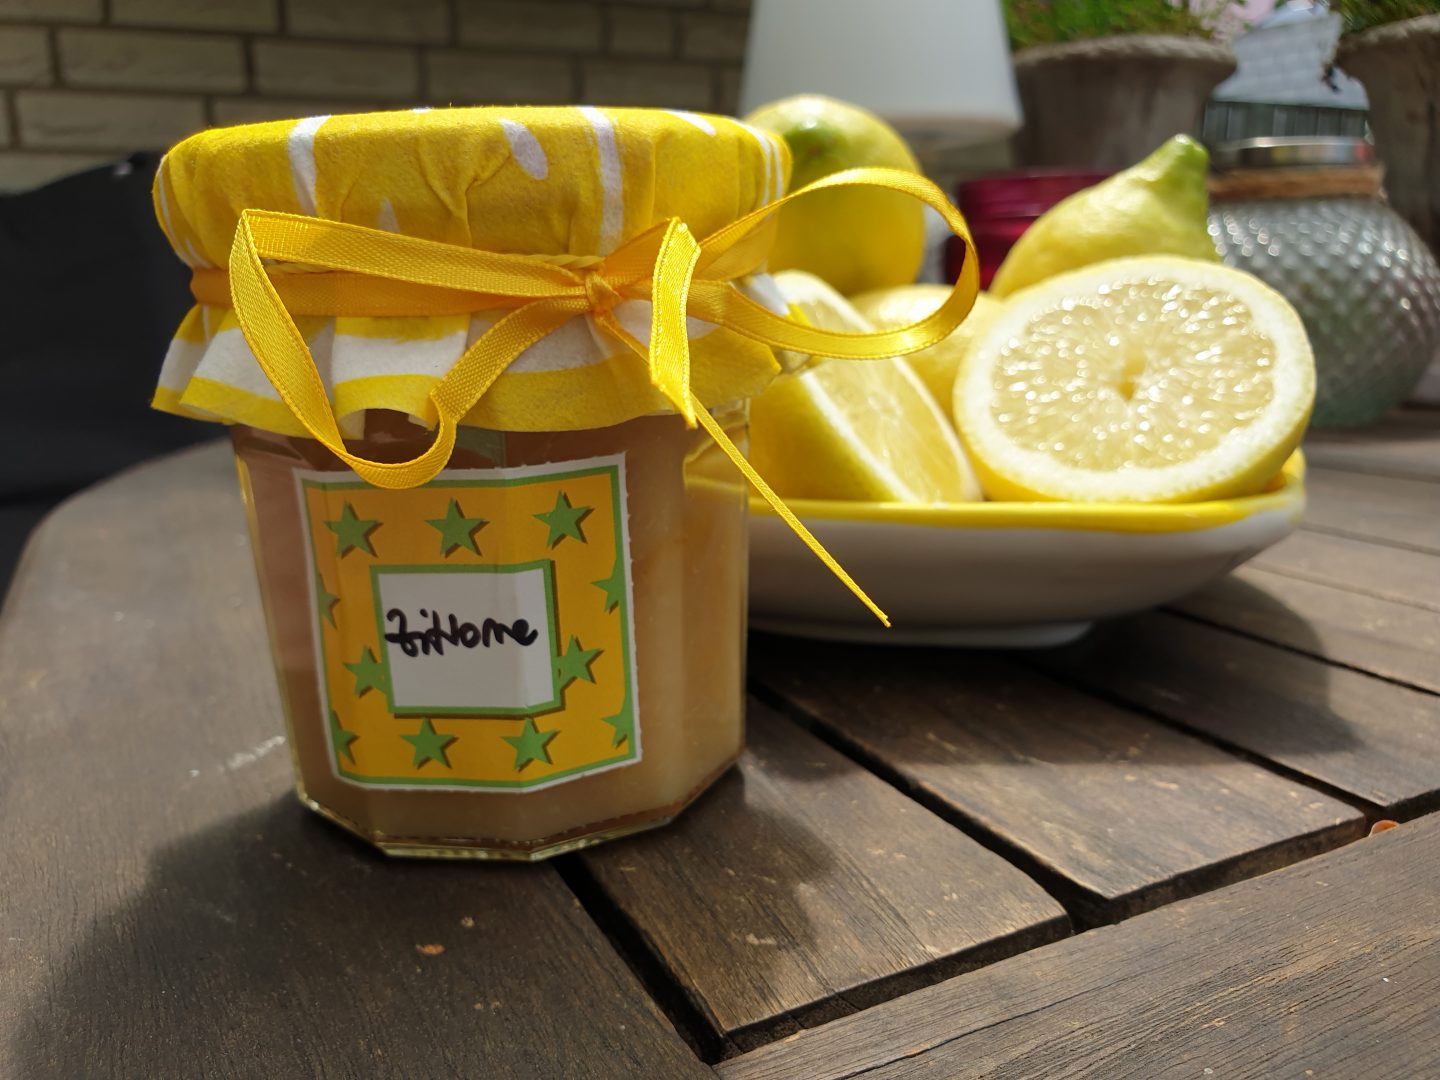 Hübsch verpackt ist die Zitronen Marmelade auch noch ein liebevolles Geschenk. 